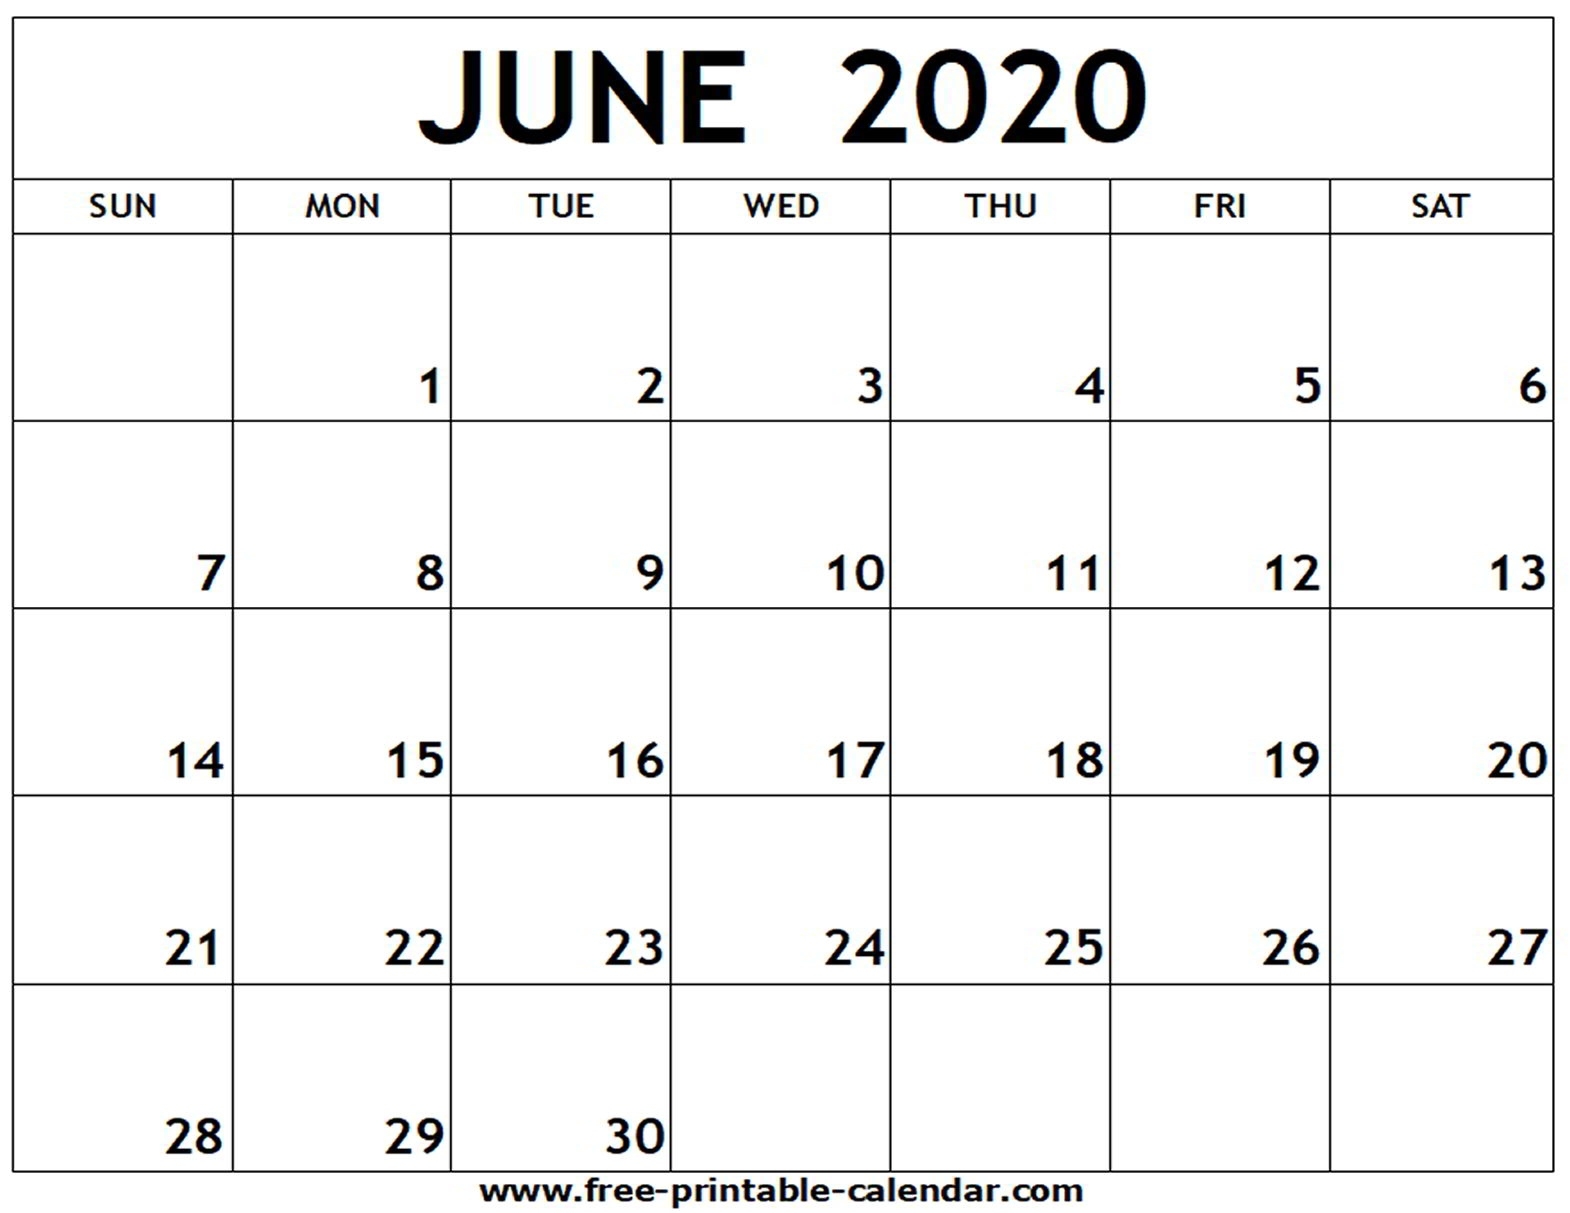 June 2020 Printable Calendar - Free-Printable-Calendar Incredible June 2020 Calendar Canada